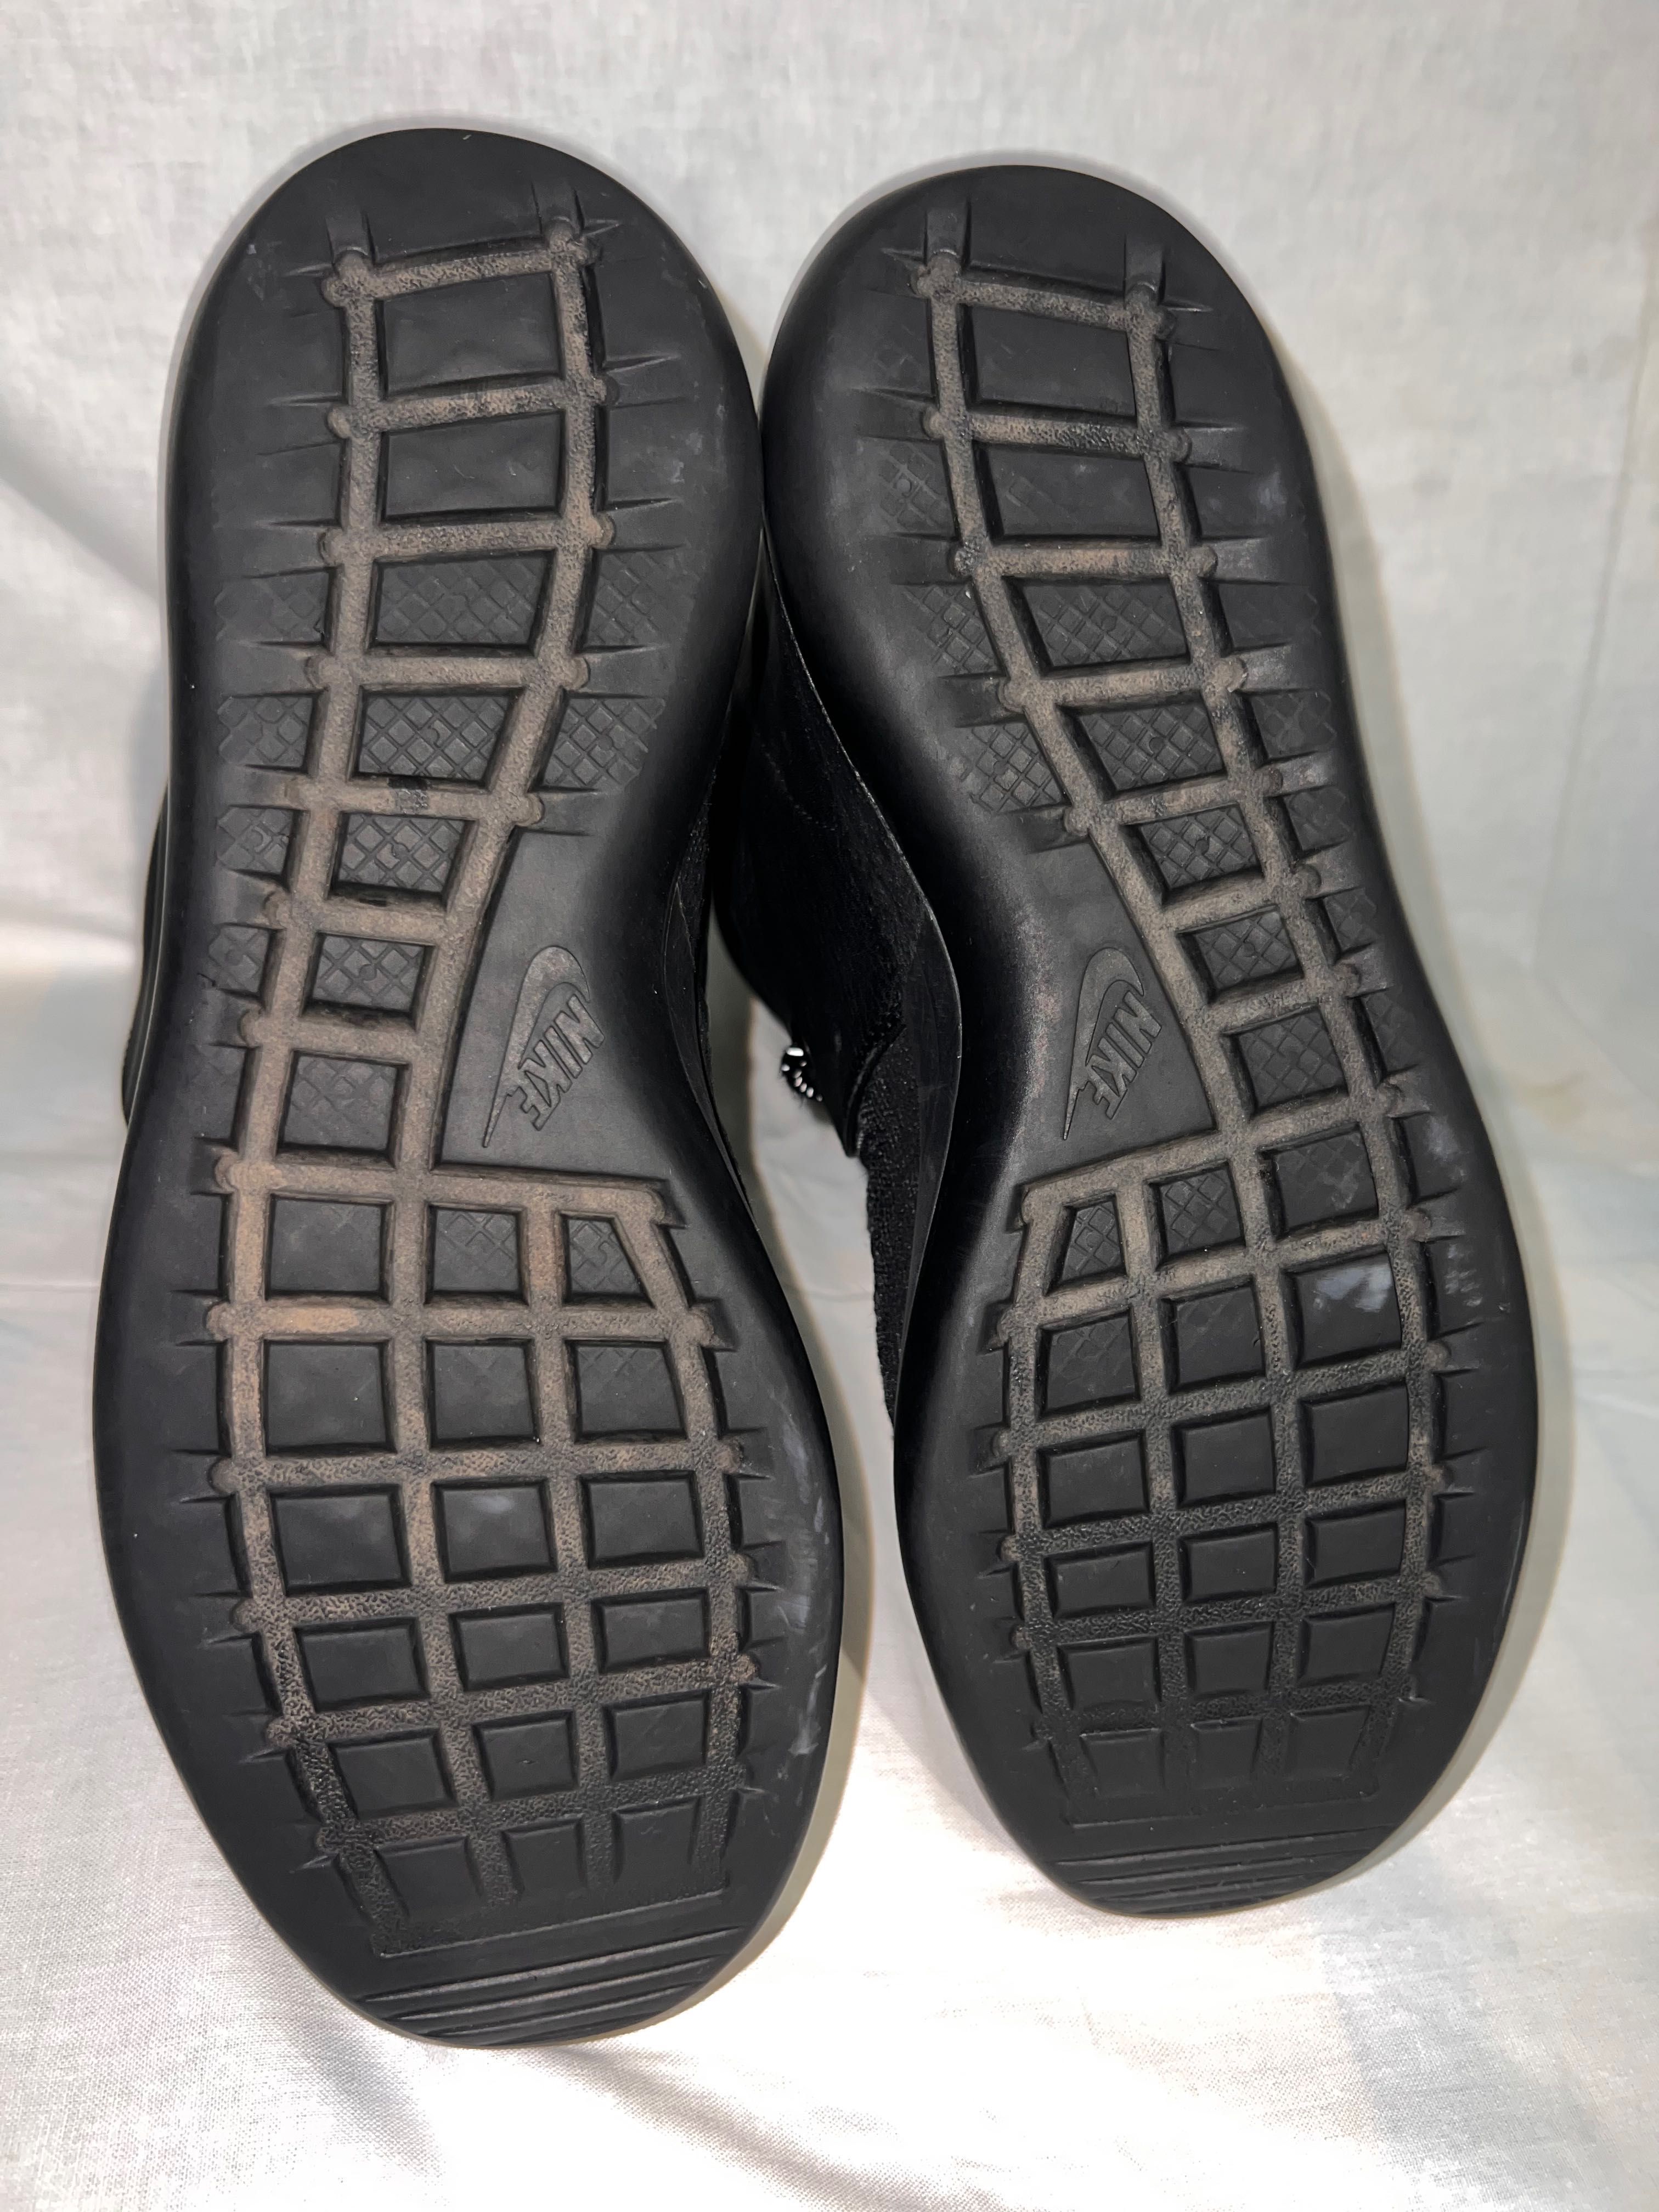 Кожаные сапоги Nike,кроссовки,ботинки оригинал,размер 39 25 см